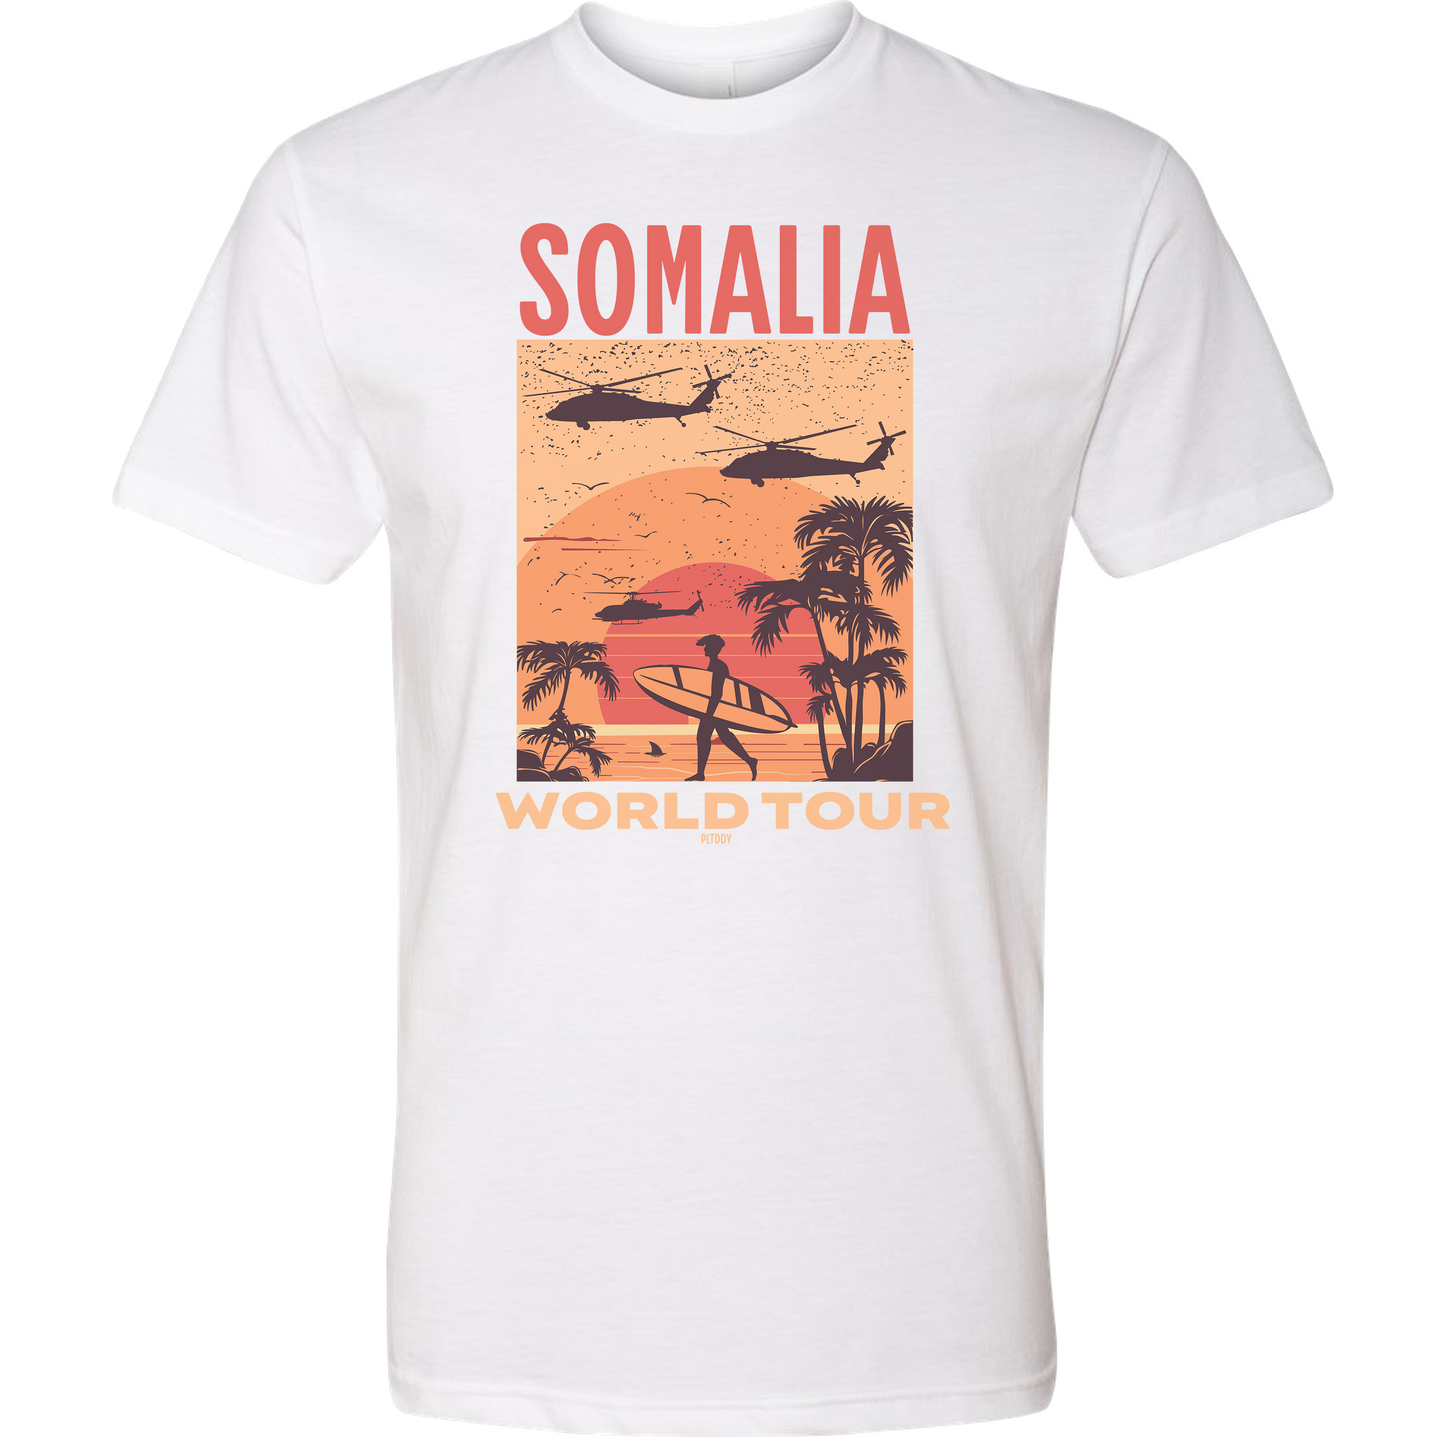 Somalia Tee